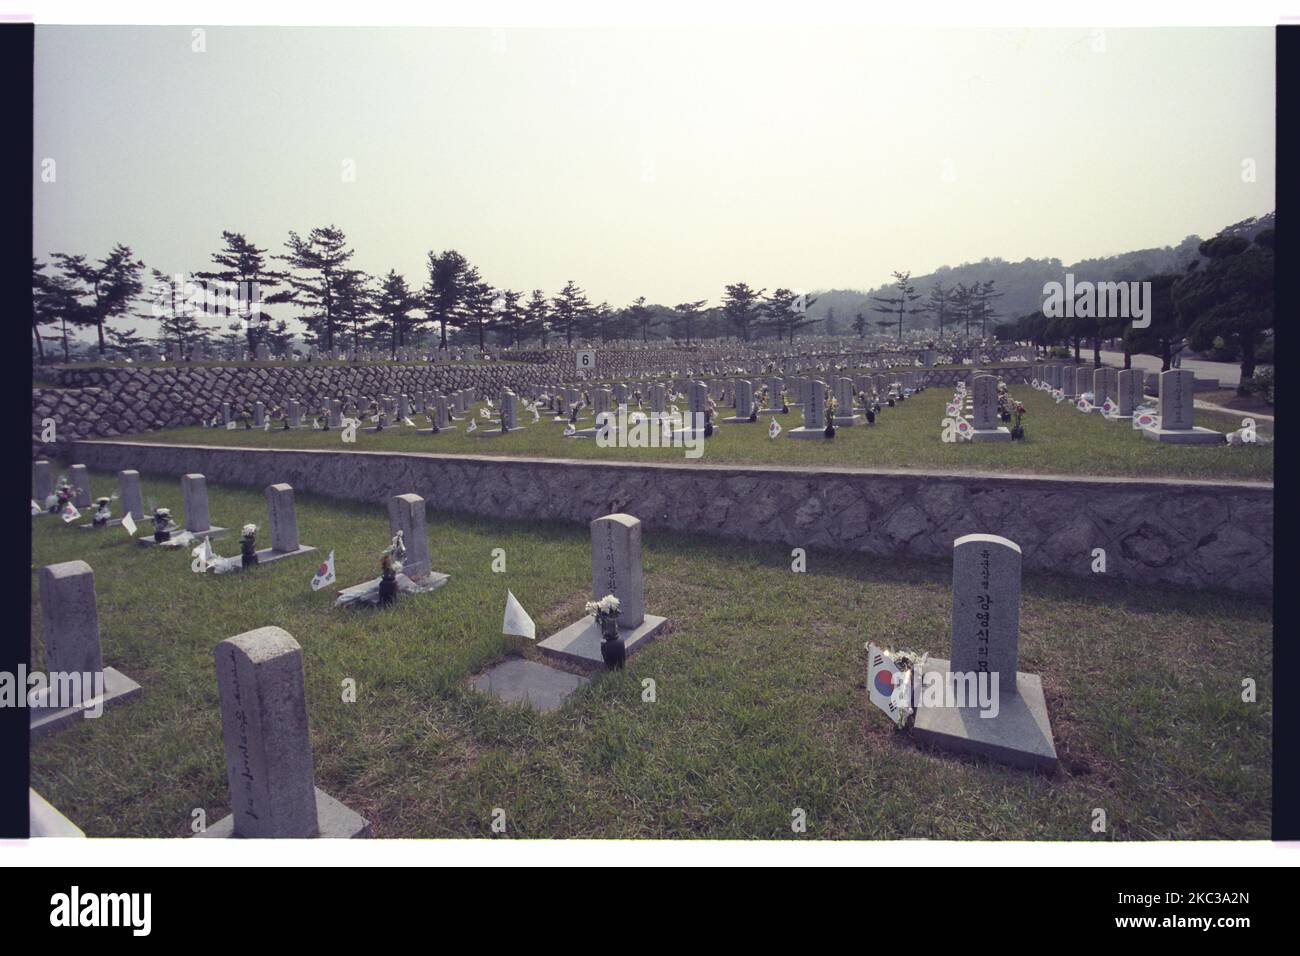 La data di questa foto scattata è il 2000. La famiglia dei morti della guerra coreana visita il cimitero nazionale dopo essersi accarezzata a Seoul, Corea del Sud. Il cimitero nazionale di Seoul si trova a Dongjak-dong, Dongjak-GU, Seoul, Corea del Sud. Quando fu istituito con decreto presidenziale di Syngman Rhee nel 1956, fu l'unico cimitero nazionale del paese. Quando il cimitero raggiunse la sua capacità all'inizio degli anni '1970s, il cimitero nazionale di Daejeon fu fondato nel 1976. Entrambi i cimiteri erano stati supervisionati dal Ministero della Difesa sudcoreano fino al 2005, ma nel 2006 il cimitero nazionale di Daejeon fu trasferito al Ministero dei Patrioti e dei Veterani Foto Stock